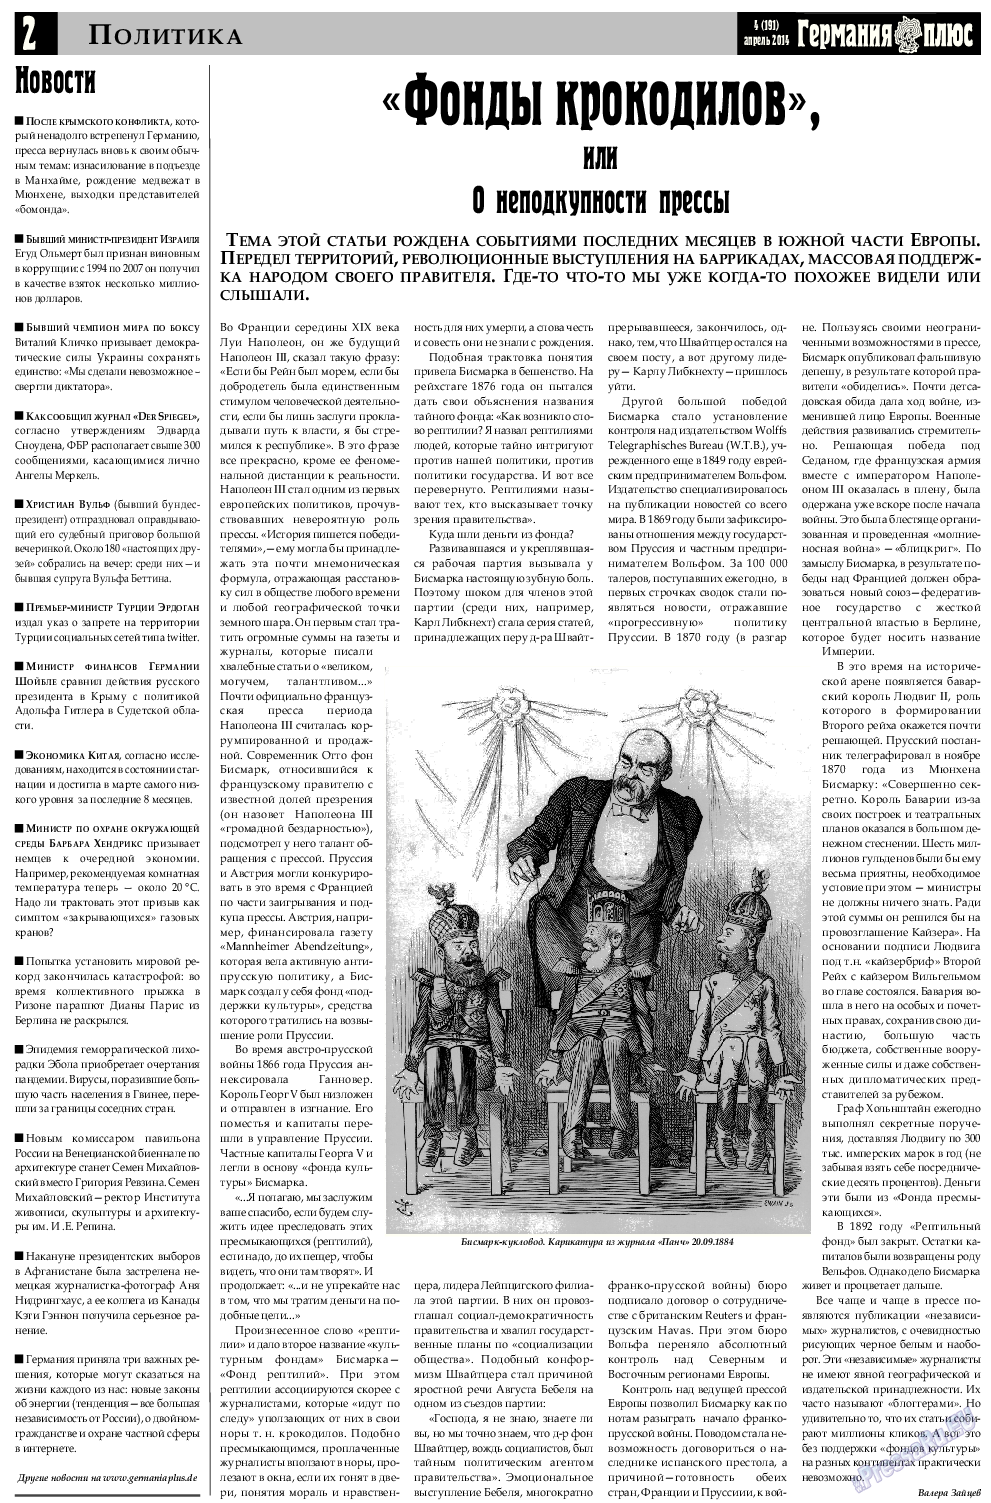 Германия плюс, газета. 2014 №4 стр.2